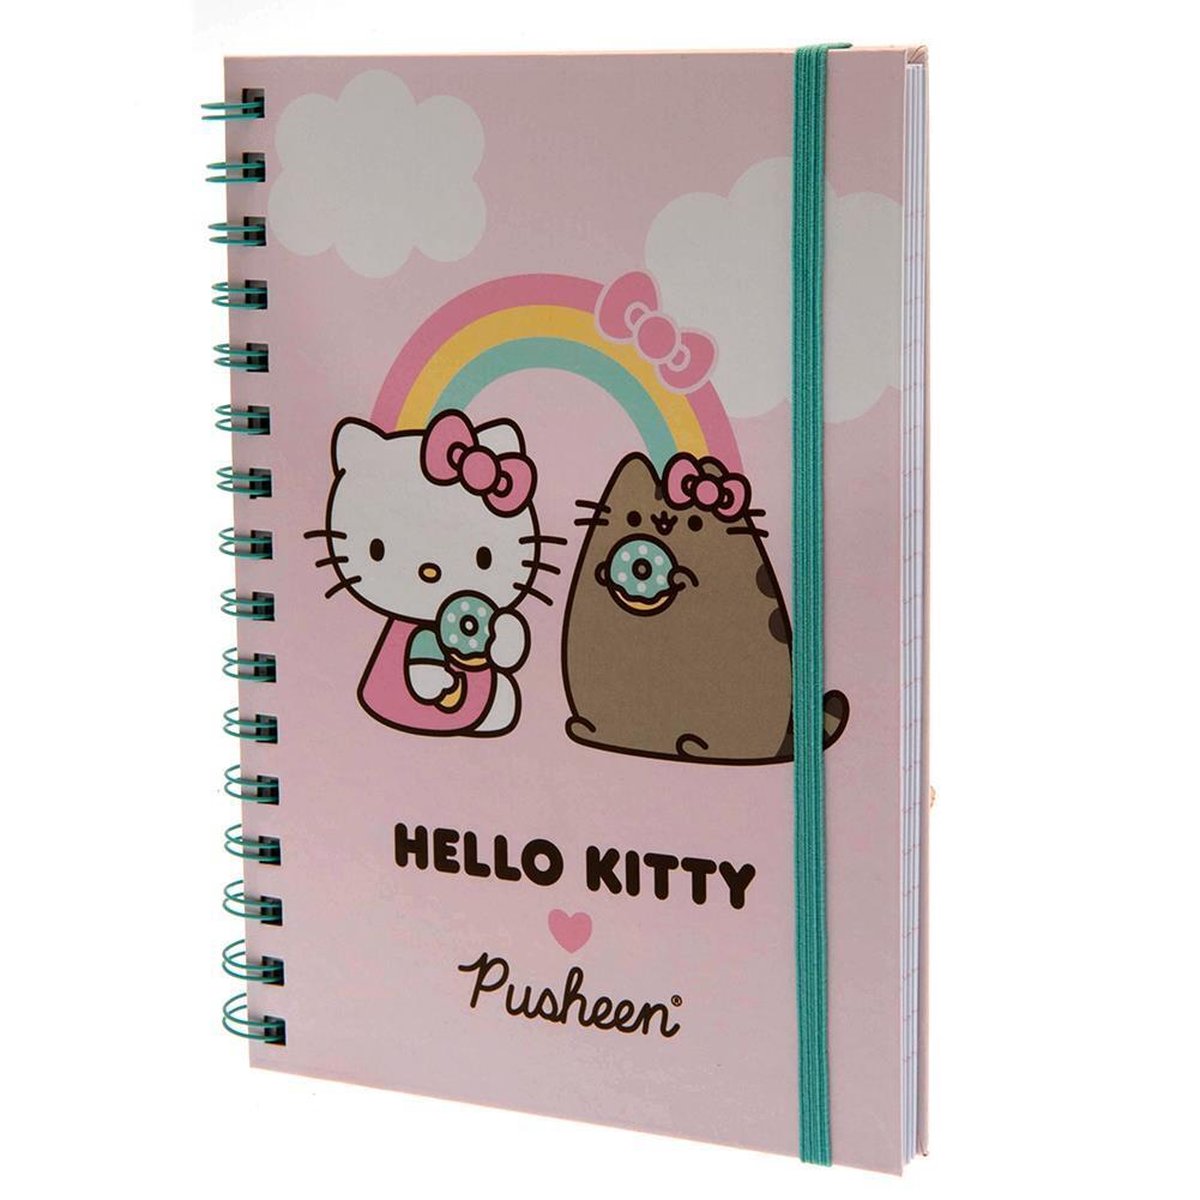 Hello Kitty & Pusheen - Treat Time - A5 notitieboek